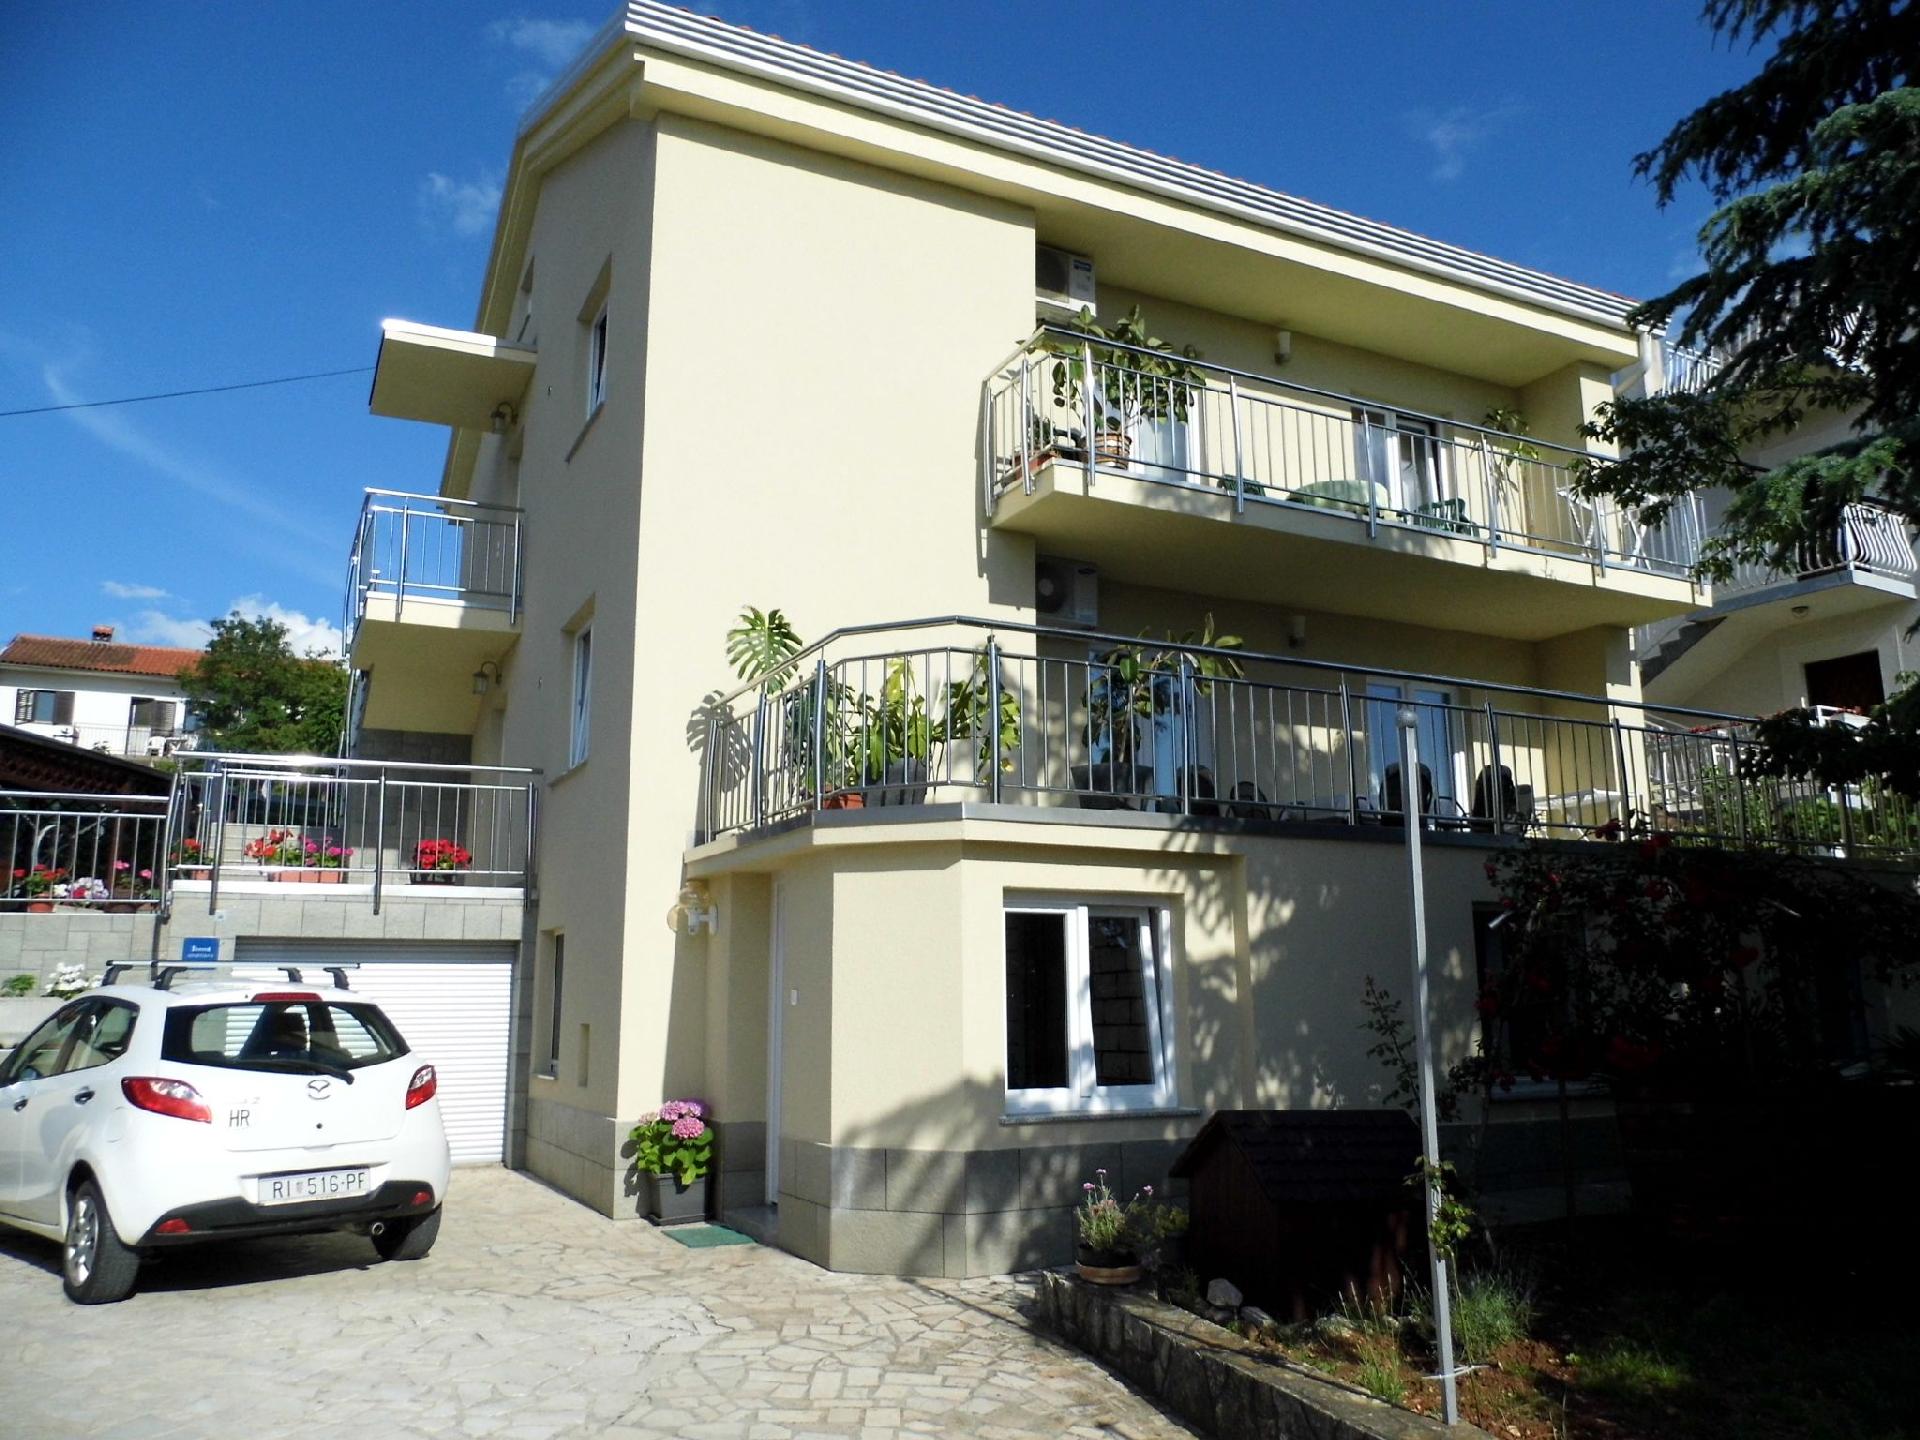 Ferienwohnung für 4 Personen ca. 90 m² i Ferienhaus in Kroatien